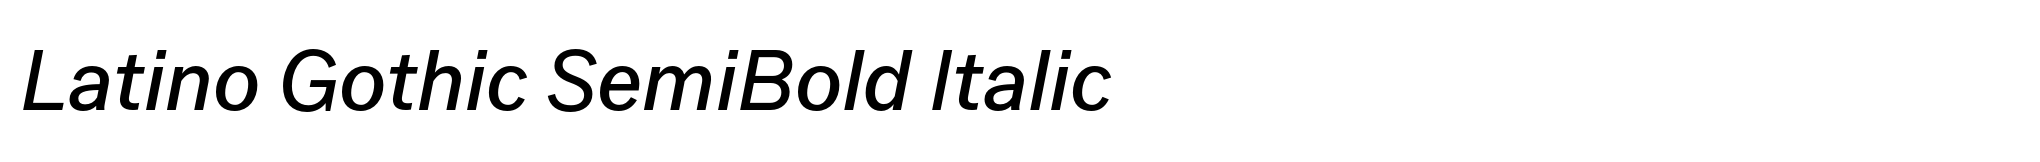 Latino Gothic SemiBold Italic image